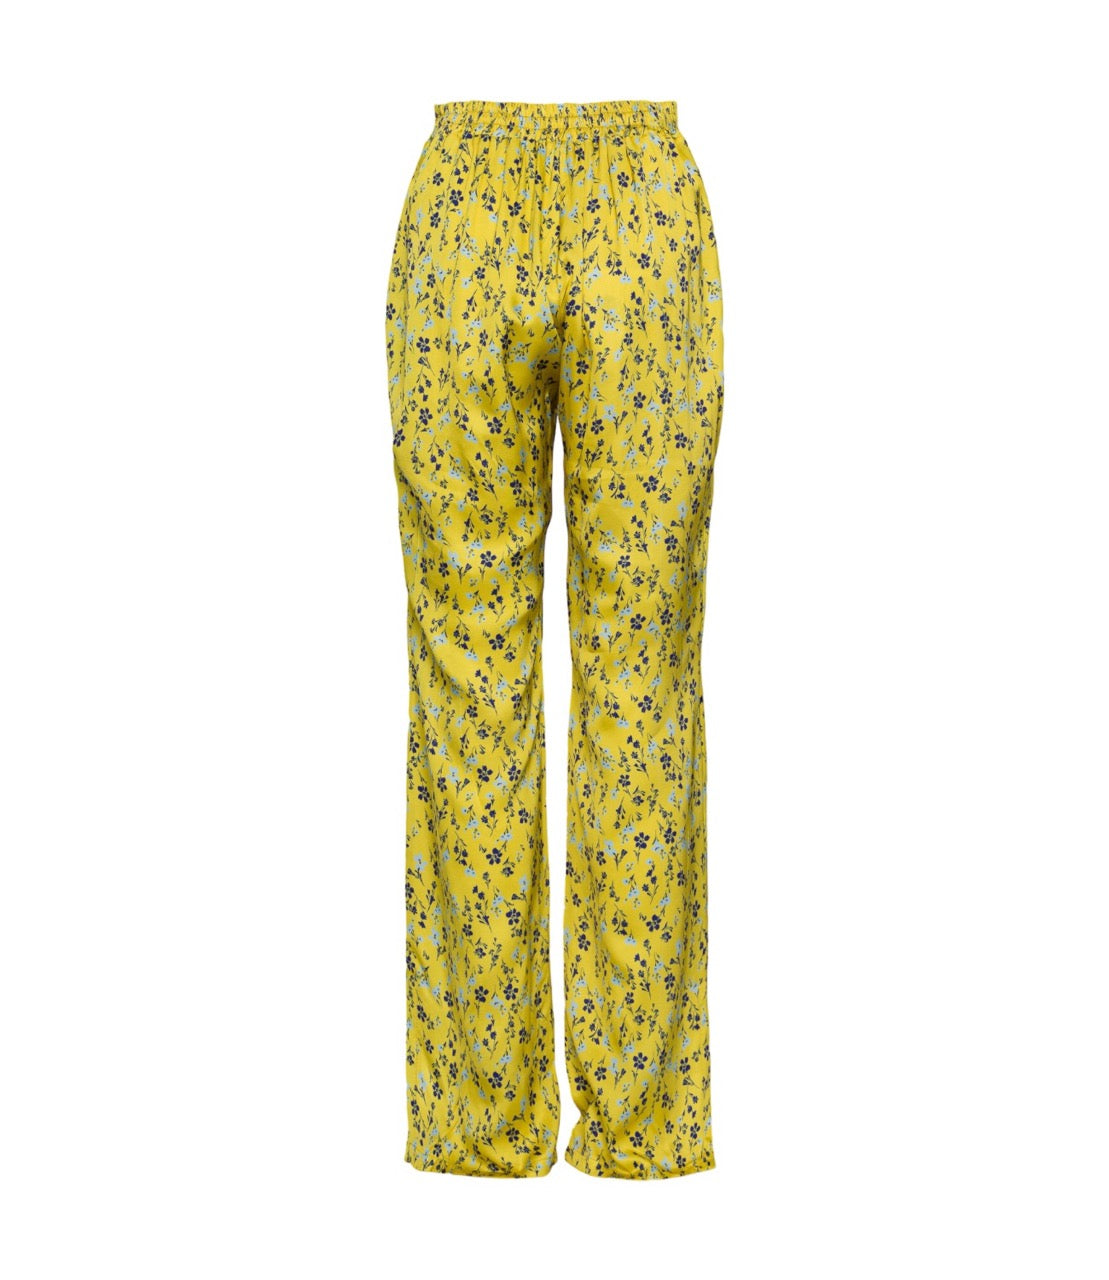 Saiph floral yellow print pants